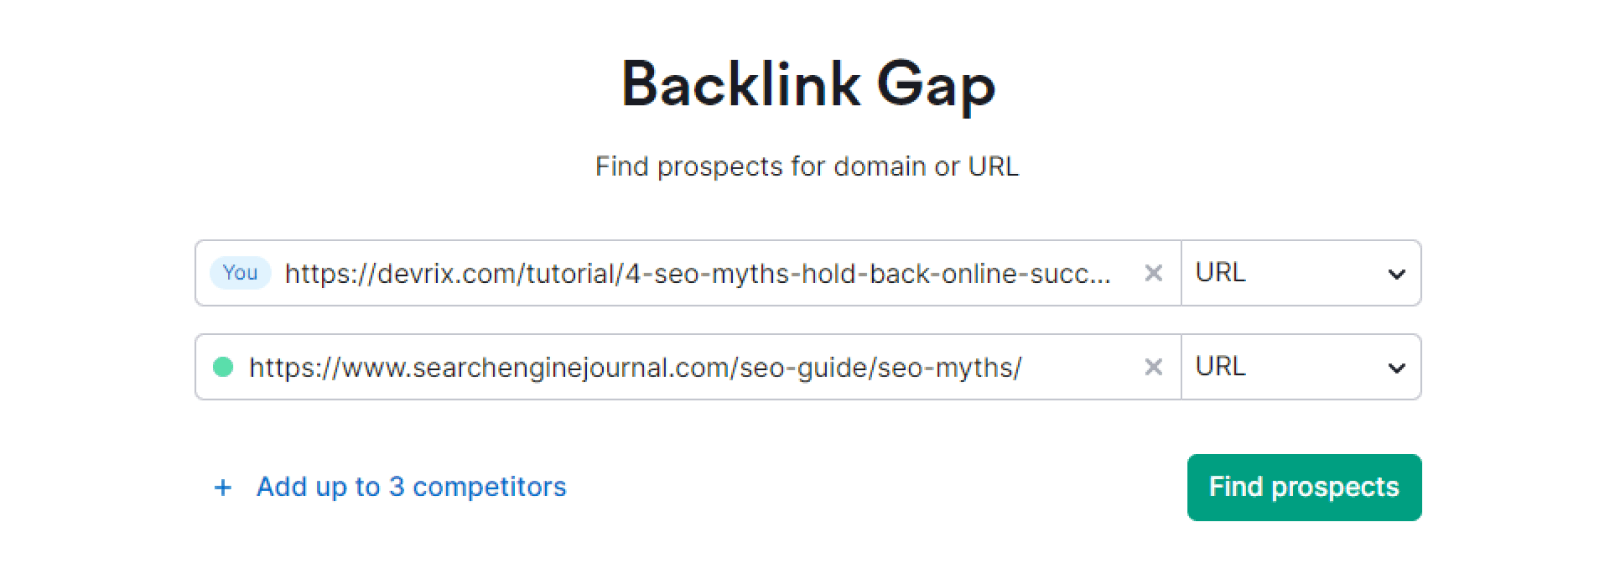 Backlink Gap Compare